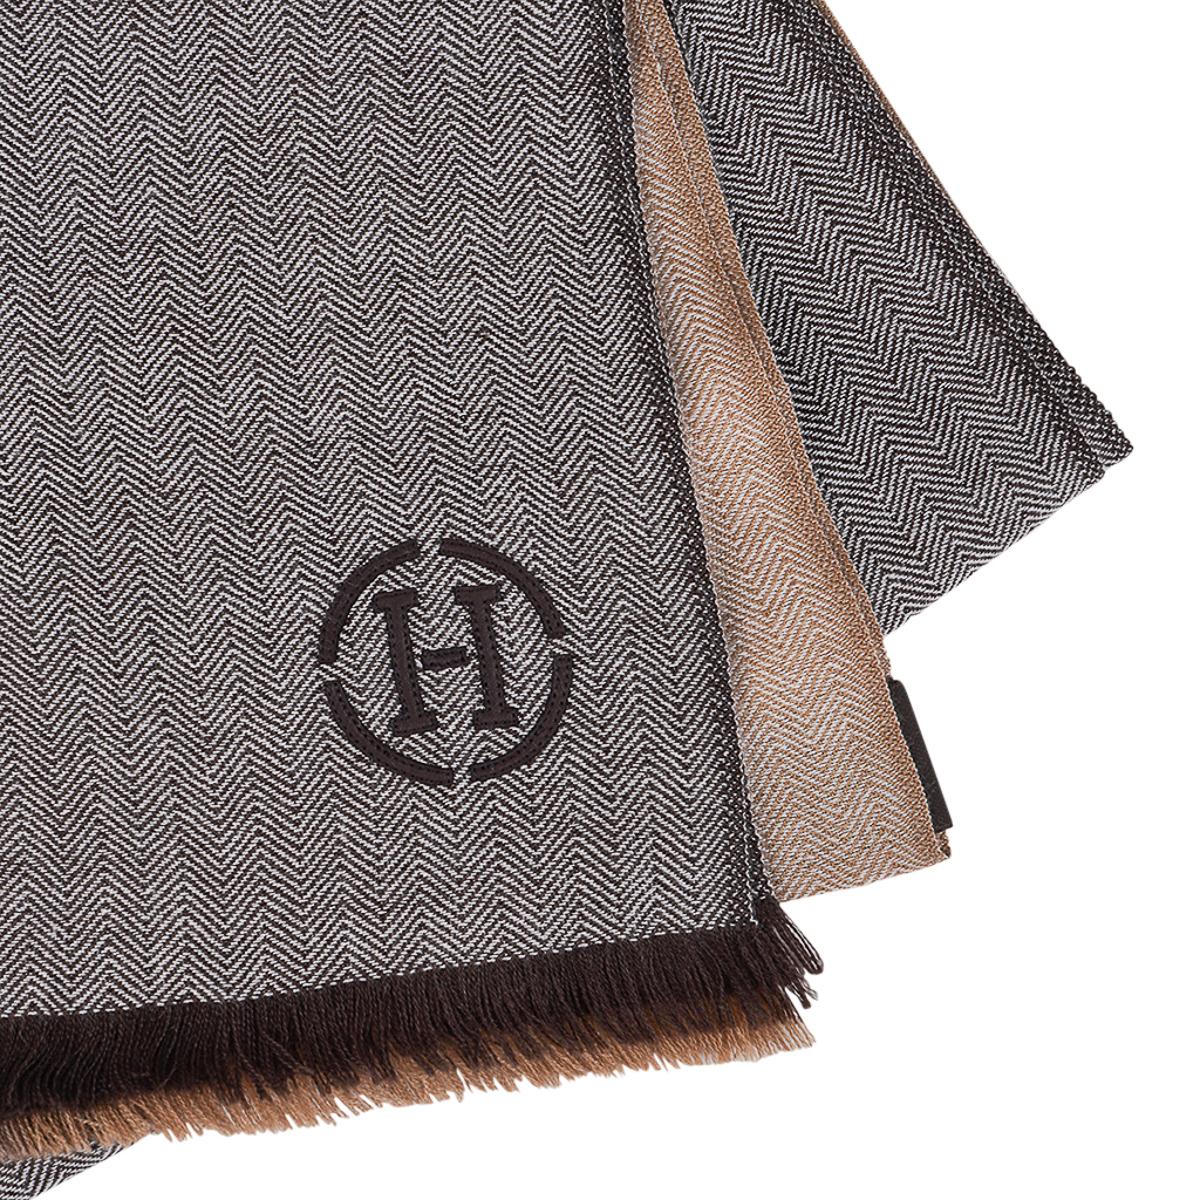 Mightychic propose un silencieux artisanal Himalaya Colorblock d'Hermès en Brun, Taupe et Camel.
Ce cachemire très doux, teint et tissé à la main, est créé selon le motif à chevrons emblématique d'Hermès.
Cuir brun entouré d'un H à